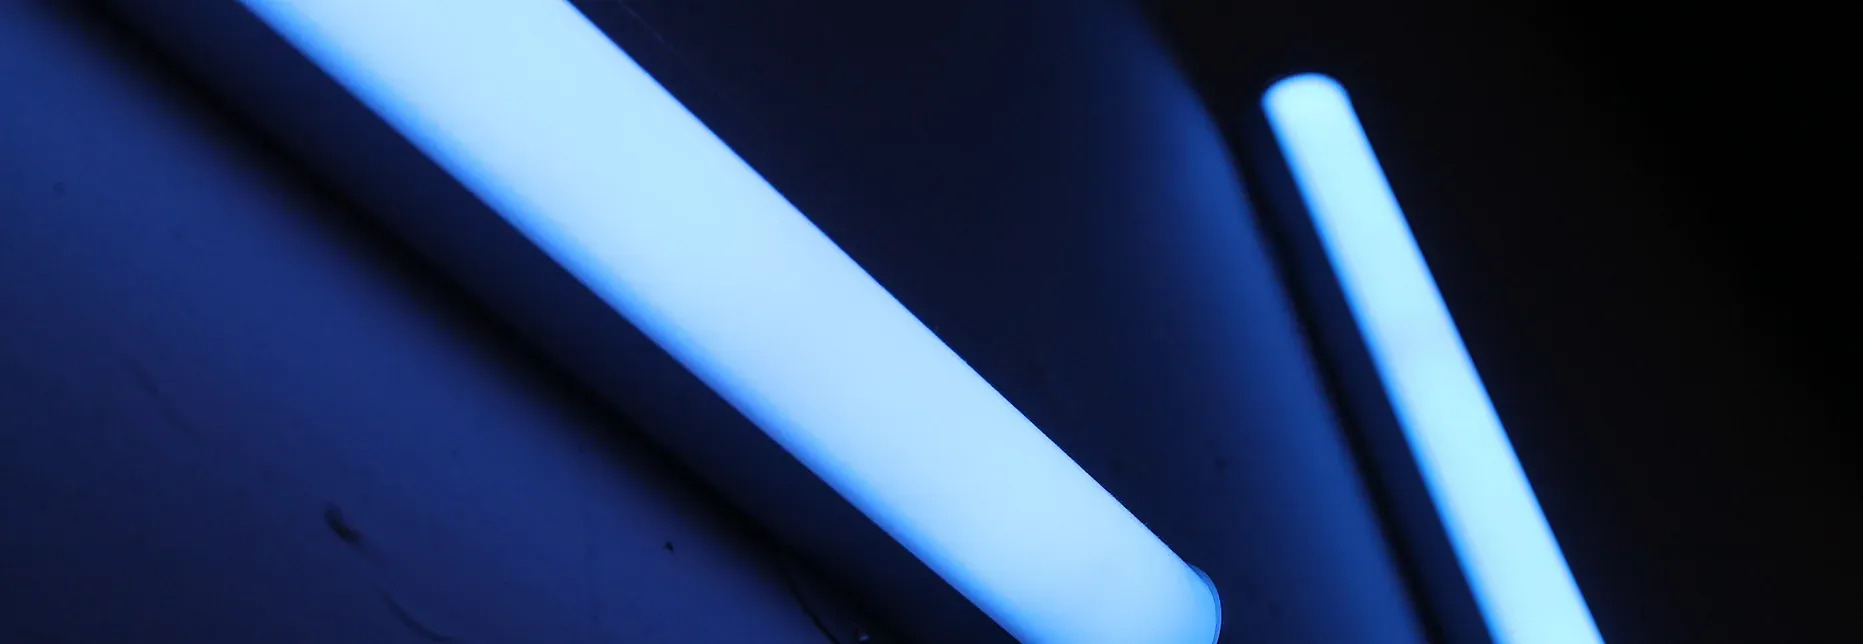 UV Light